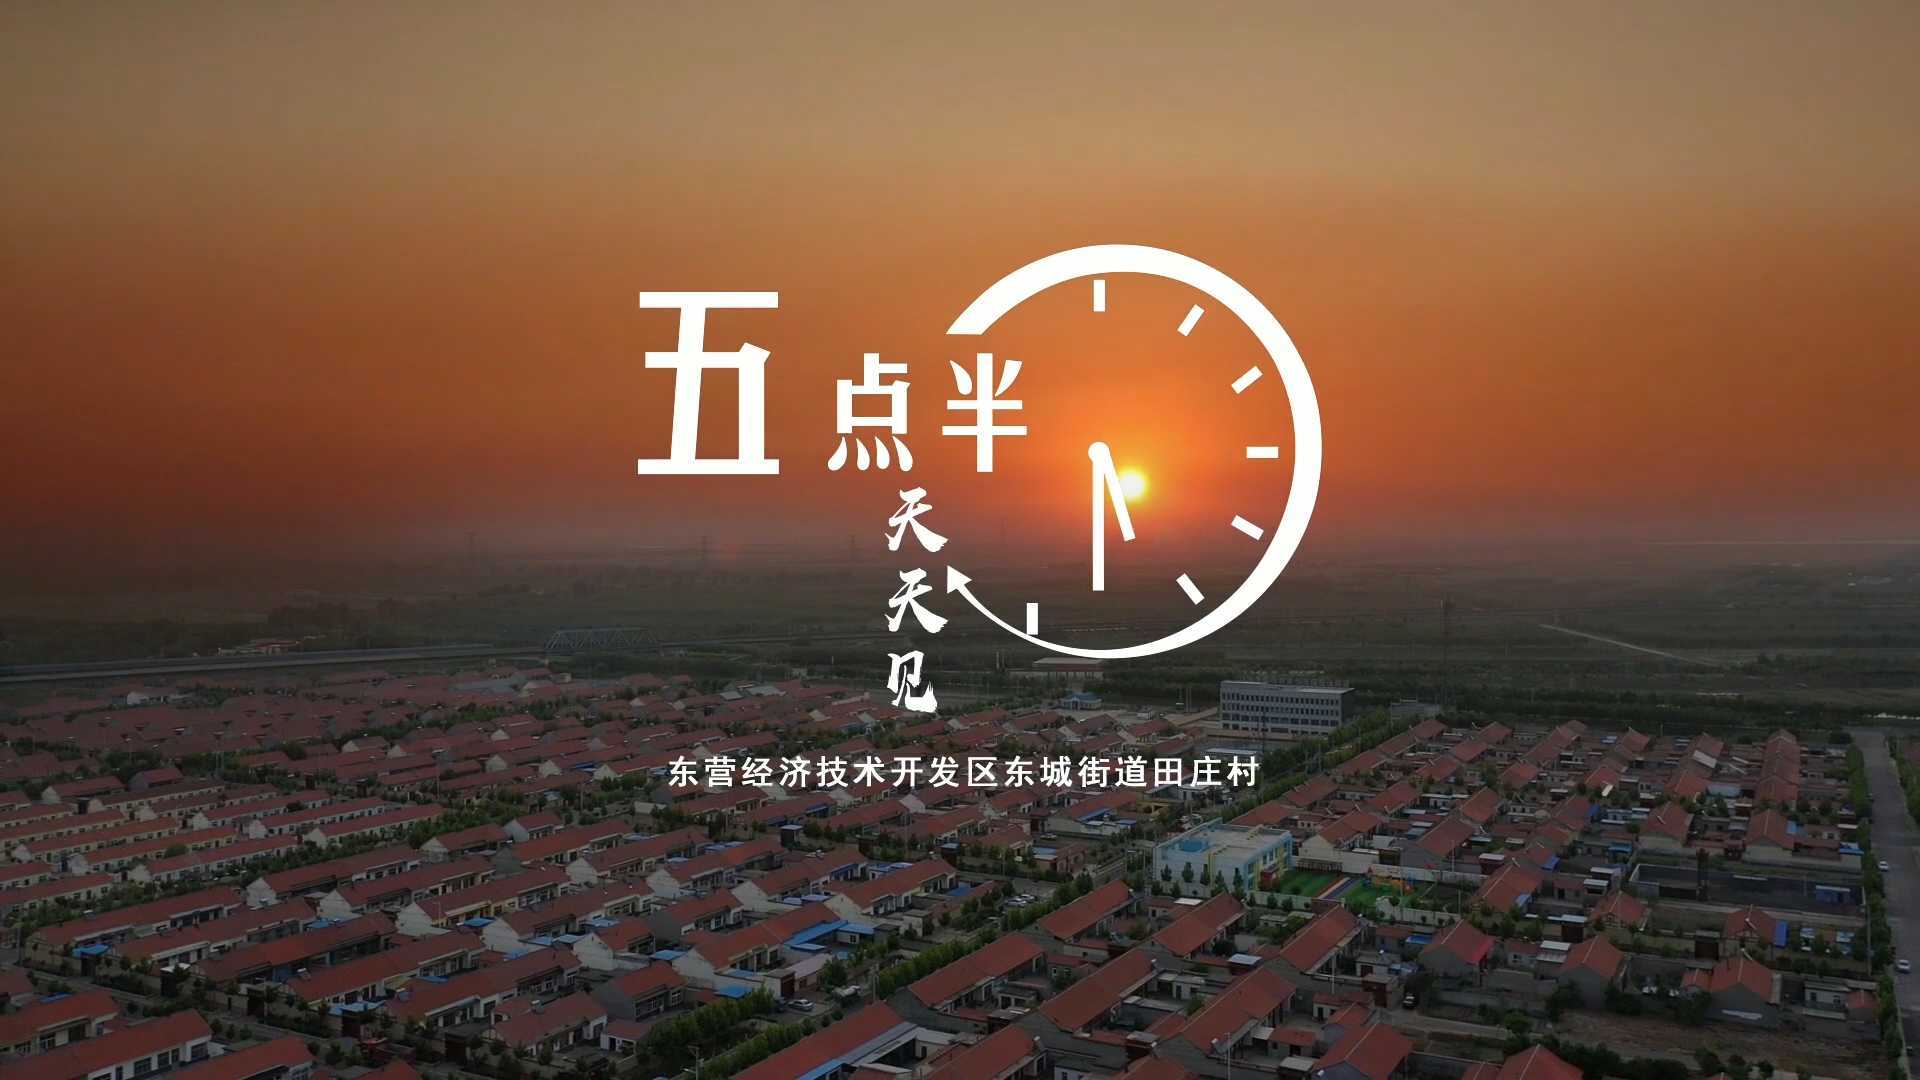 原创视频《五点半，天天见》！来看东营经济技术开发区田庄村的乡音乡貌